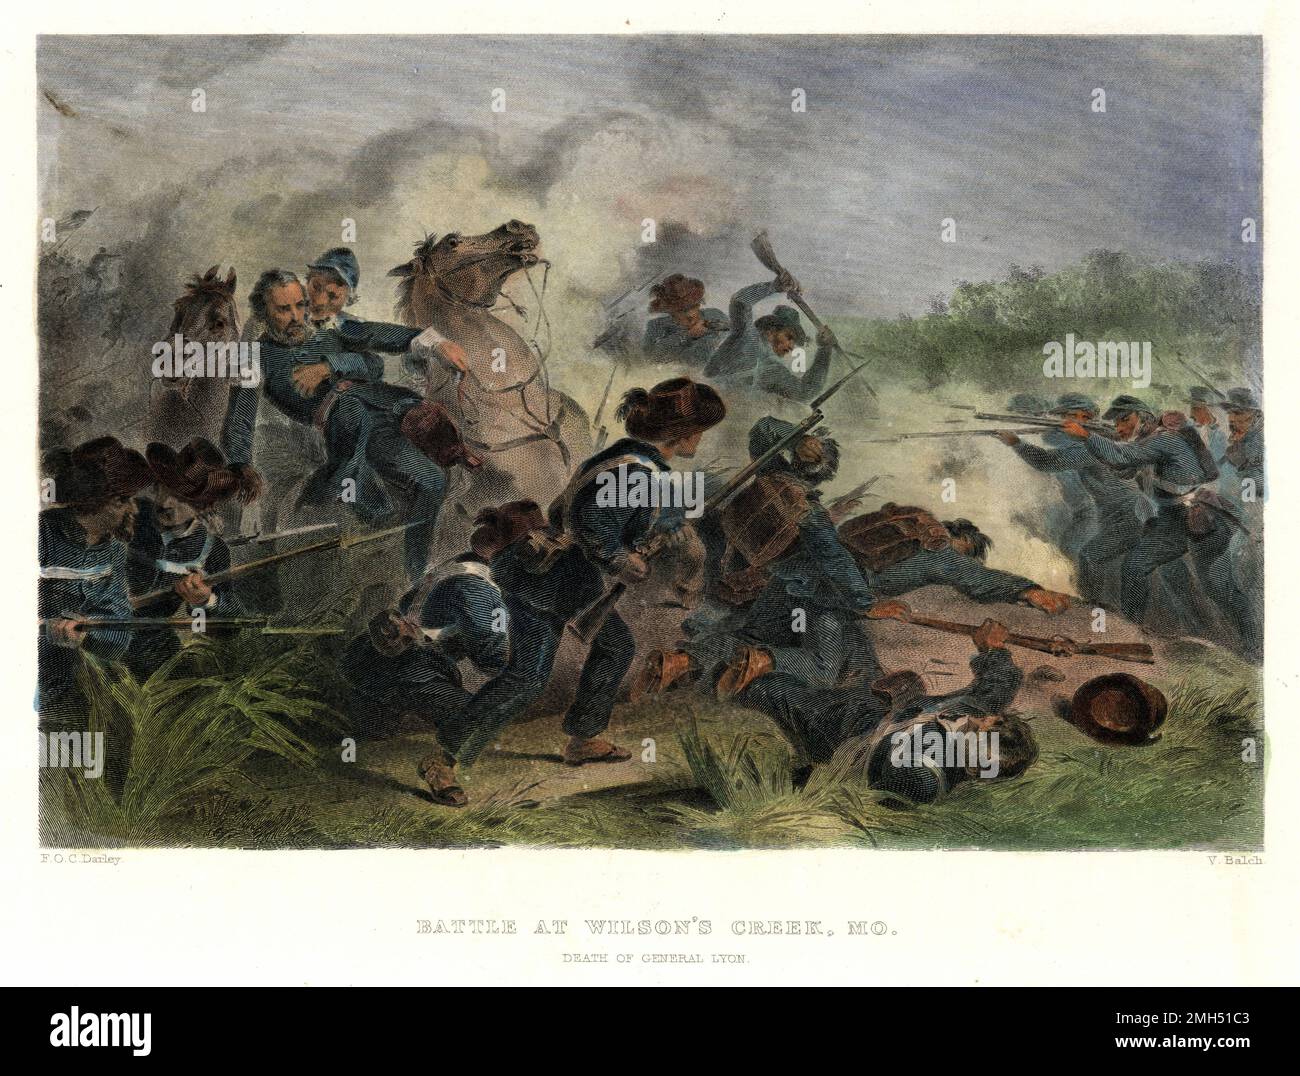 Die Schlacht von Wilson's Creek, auch bekannt als die Schlacht von Oak Hills, war eine große Schlacht in den ersten Monaten des Amerikanischen Bürgerkriegs, der am 10. August 1861 stattfand. Die Unionisy-Truppen unter Nathaniel Lyon und Samuel D. Sturgis verloren an die Konföderierten unter Sterling Price und Benjamin McCulloch. General Lyon wurde während des Kampfes getötet. Dieses Bild zeigt den Tod von Lyon während einer Kavallerie. Stockfoto